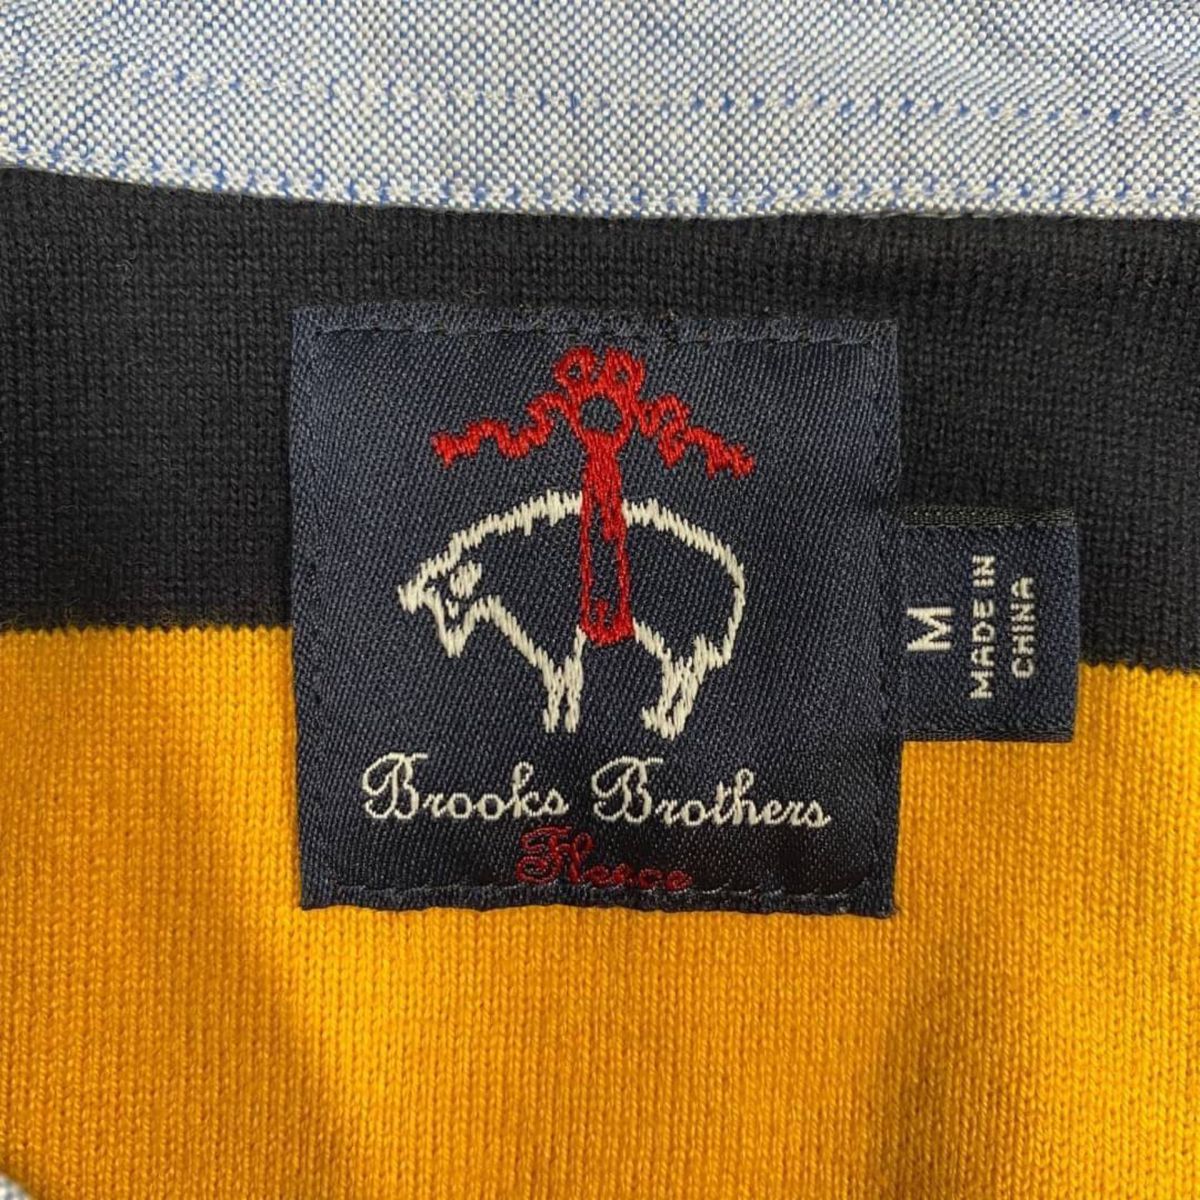 【春物】Brooks Brothers ブルックスブラザーズ 長袖 ポロシャツ ラガーシャツ レディース サイズM ボーダー柄